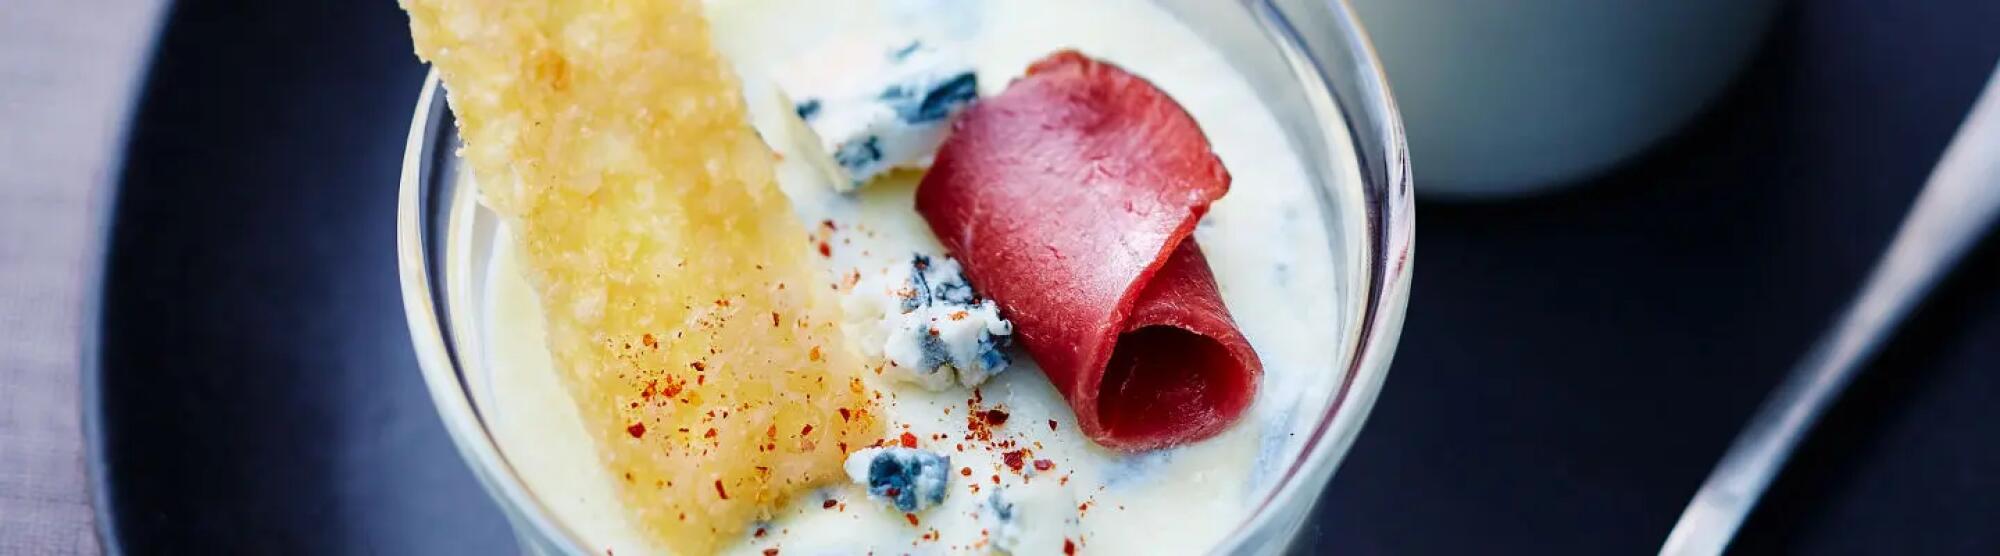 Recette : Panna cotta au fromage bleu